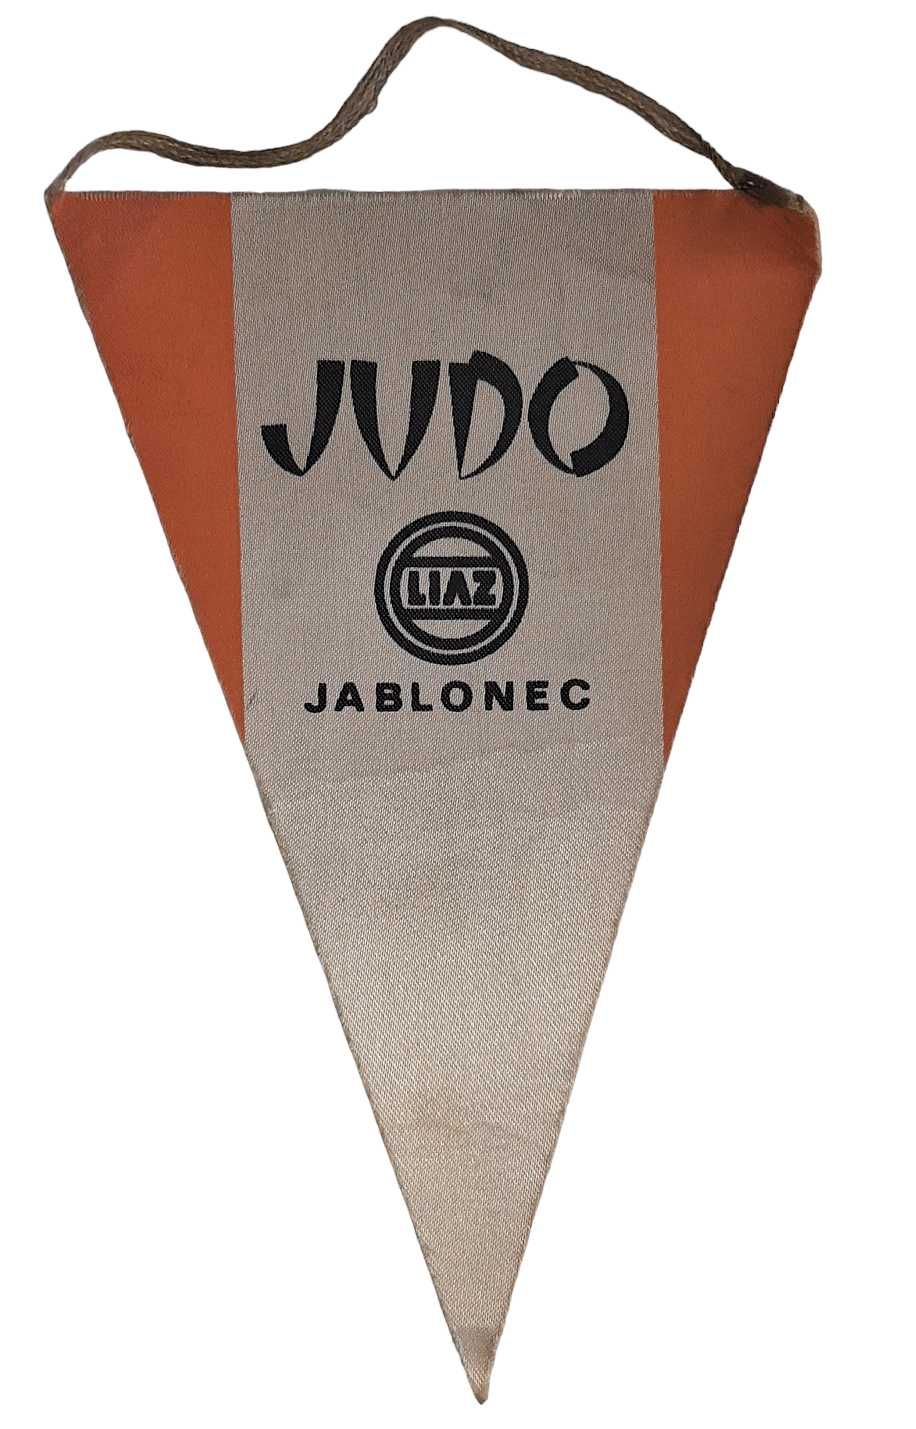 Proporczyk Judo Liaz Jablonec Czechosłowacja